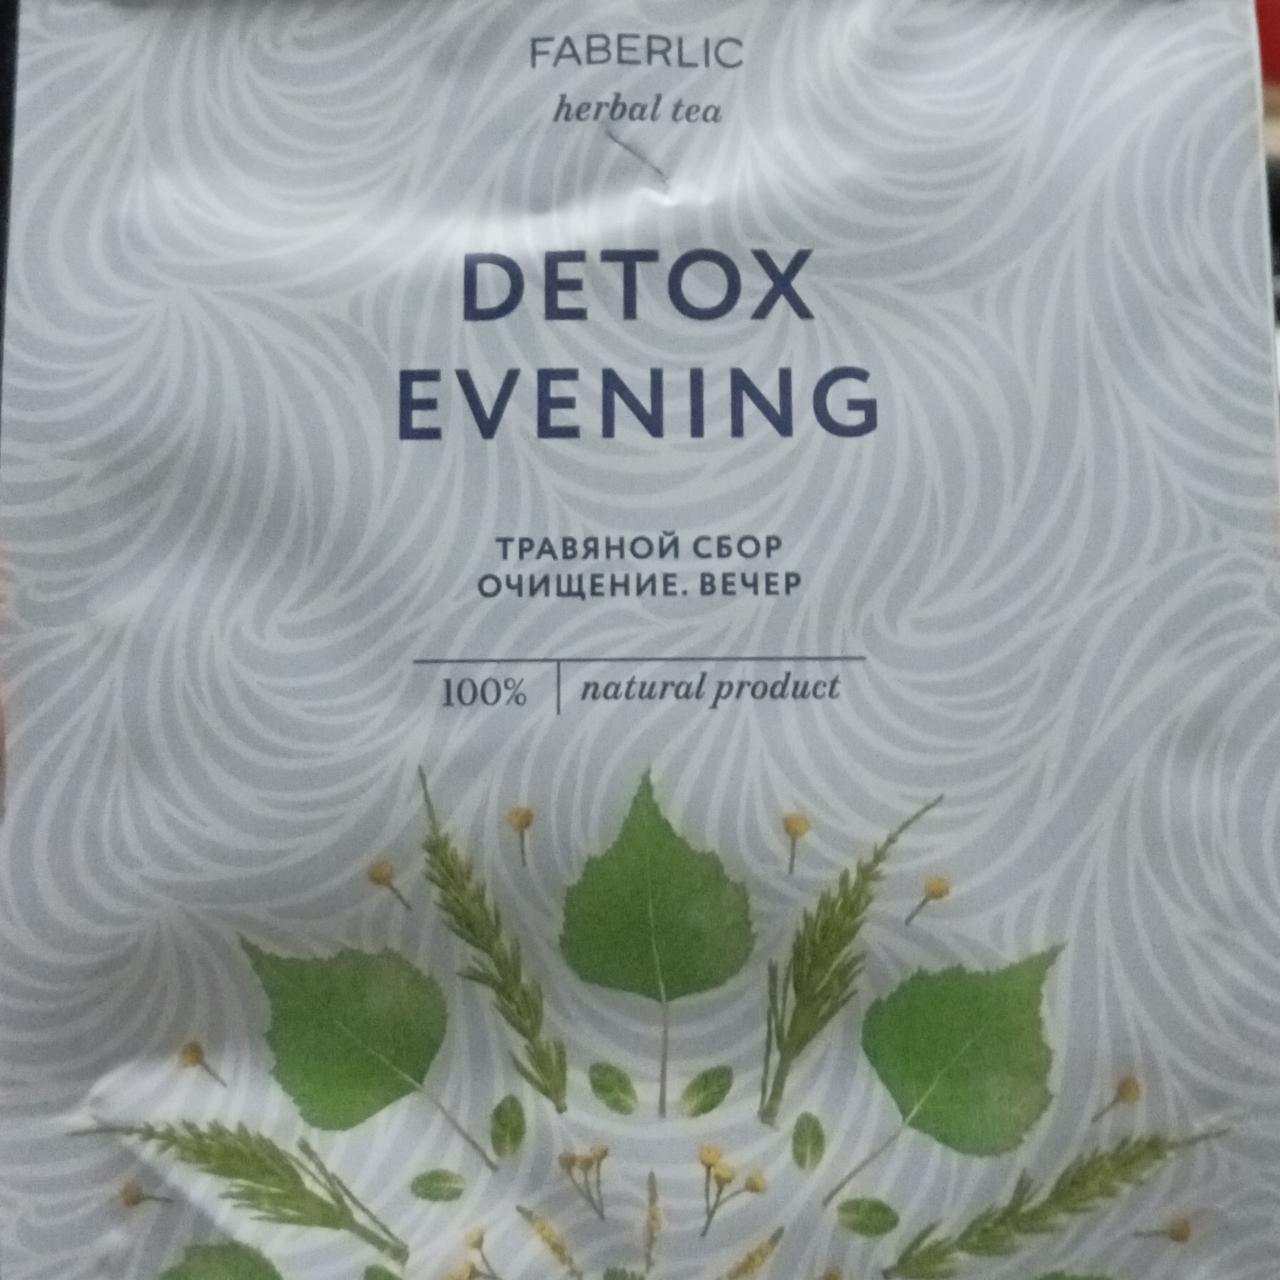 Фото - Травяной сбор очищение вечер detox evening Faberlic herbal tea